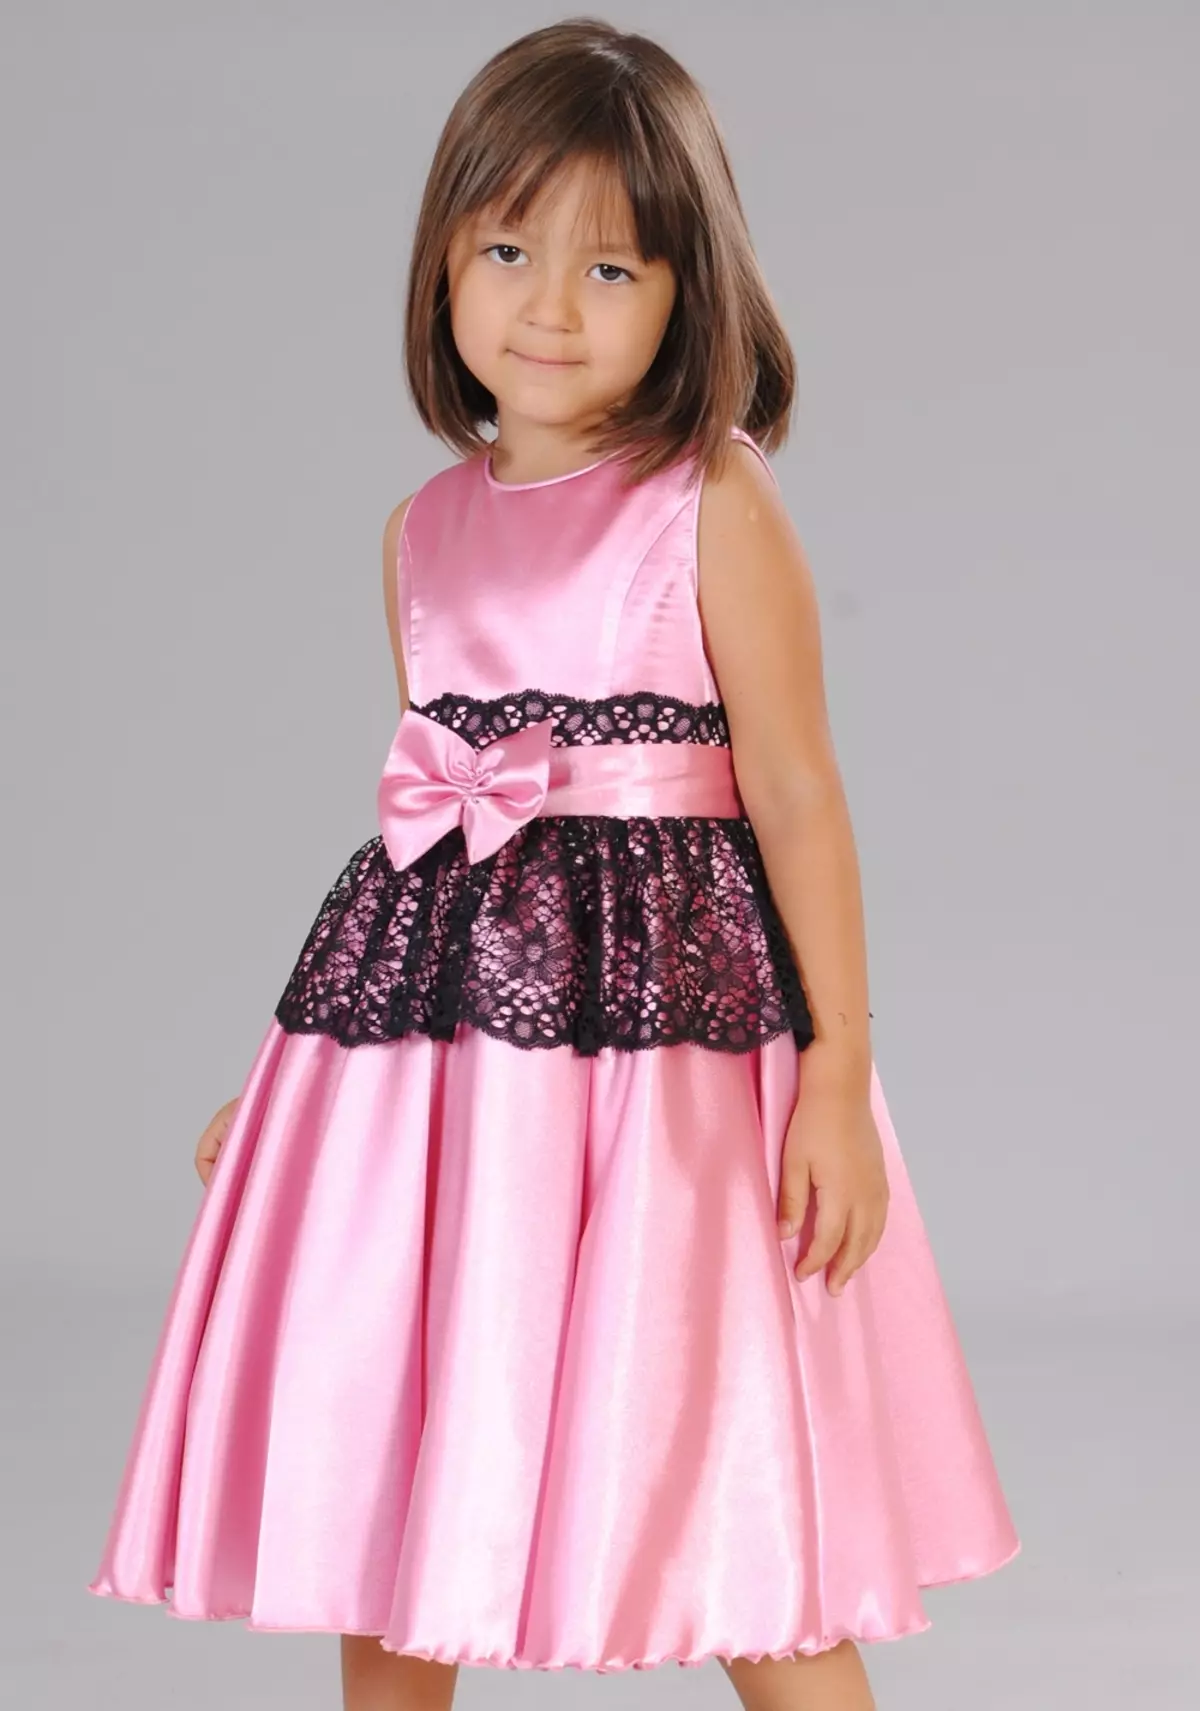 Cutie Susie (52 Fotos): Schuluniform, Kleider, Kostüme und andere Kinderbekleidung für Mädchen 7 Jahre, Produktbewertungen 3792_34